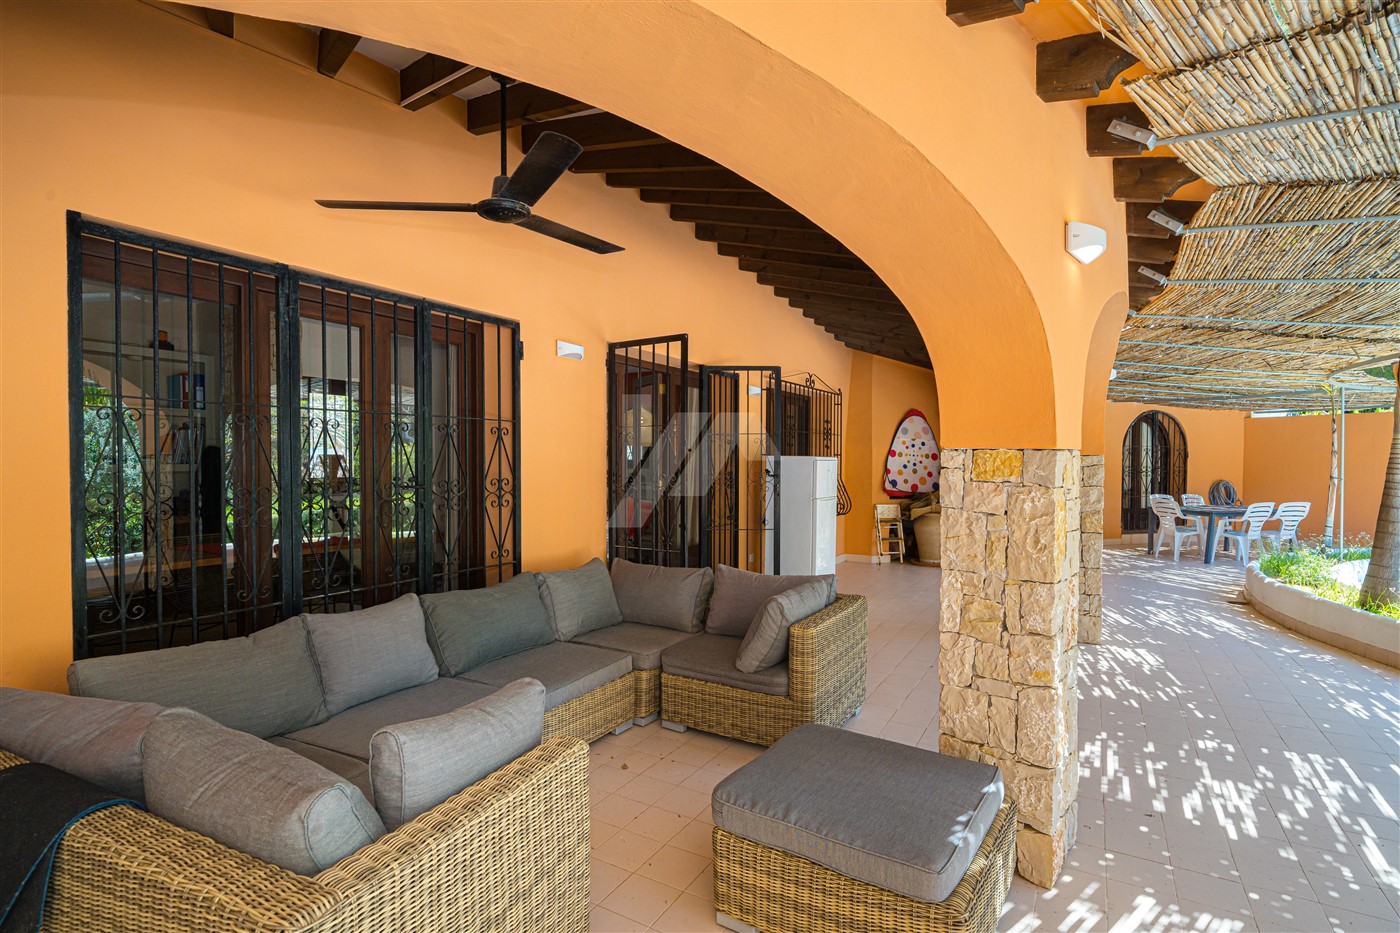 Villa im mediterranen Stil zum Verkauf in Benissa, Costa Blanca.